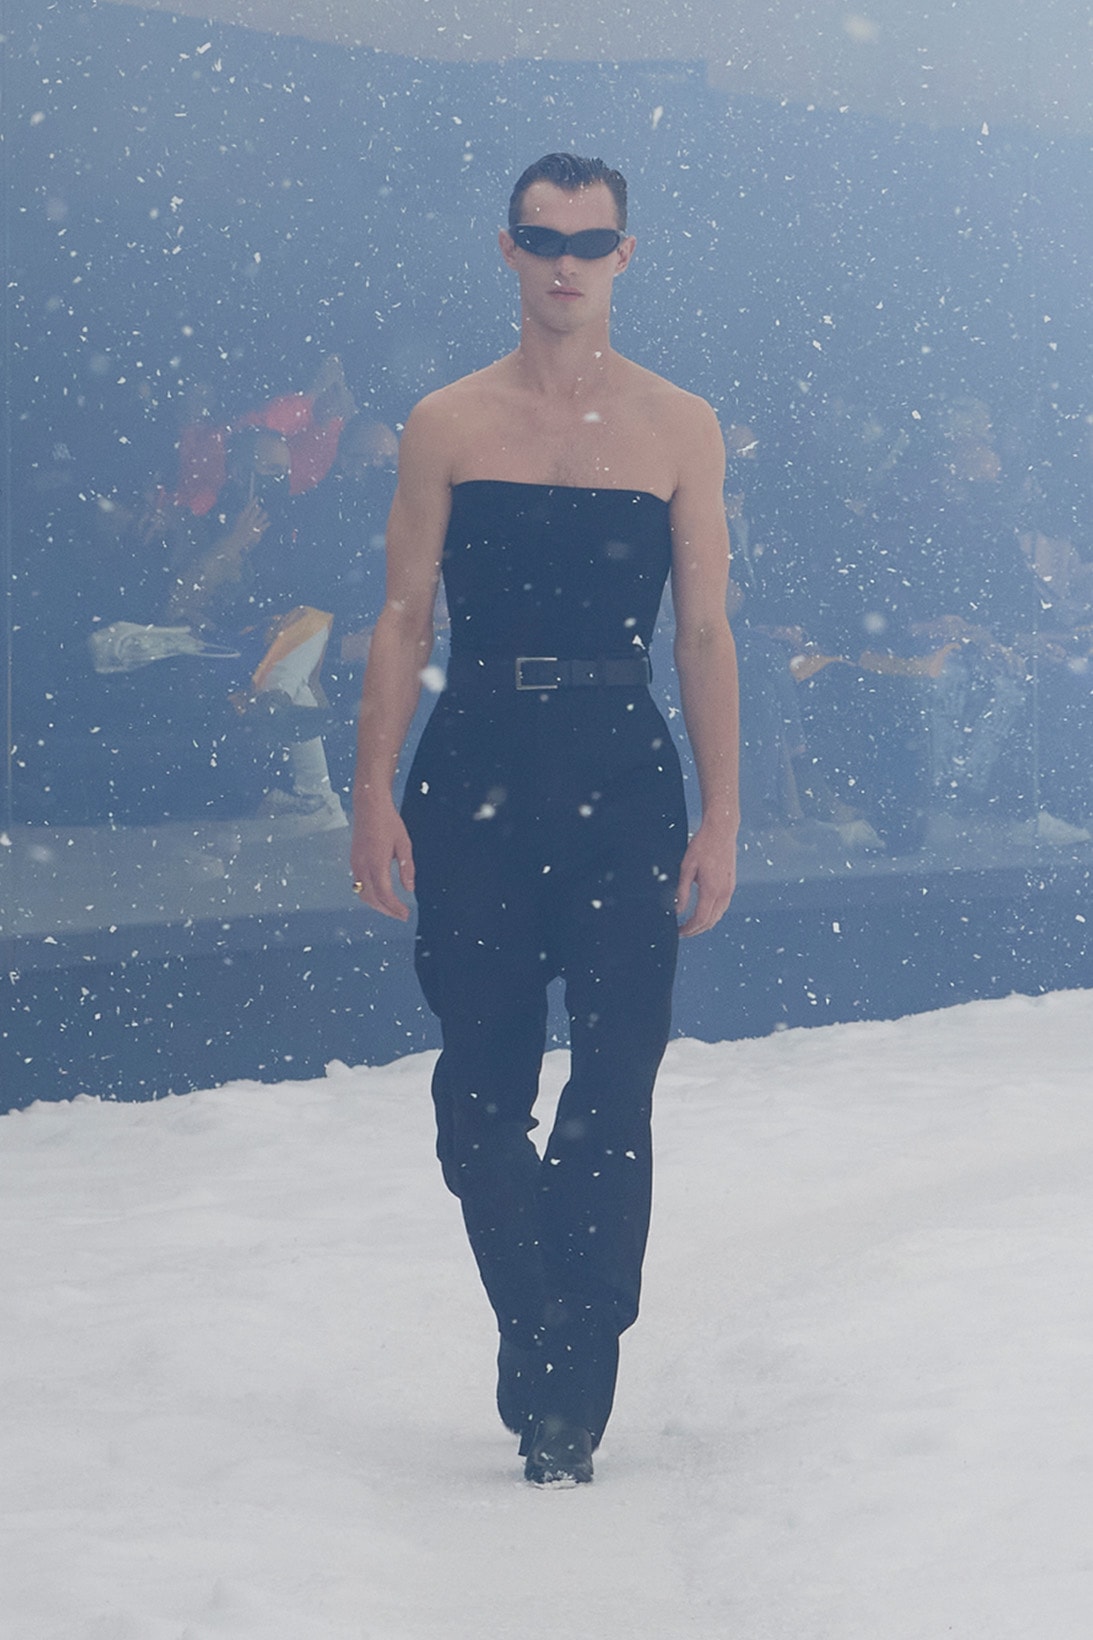 Balenciaga Fall Winter 360 Collection Snowy Apocalyptic Demna Gvasalia Ukraine Show Images